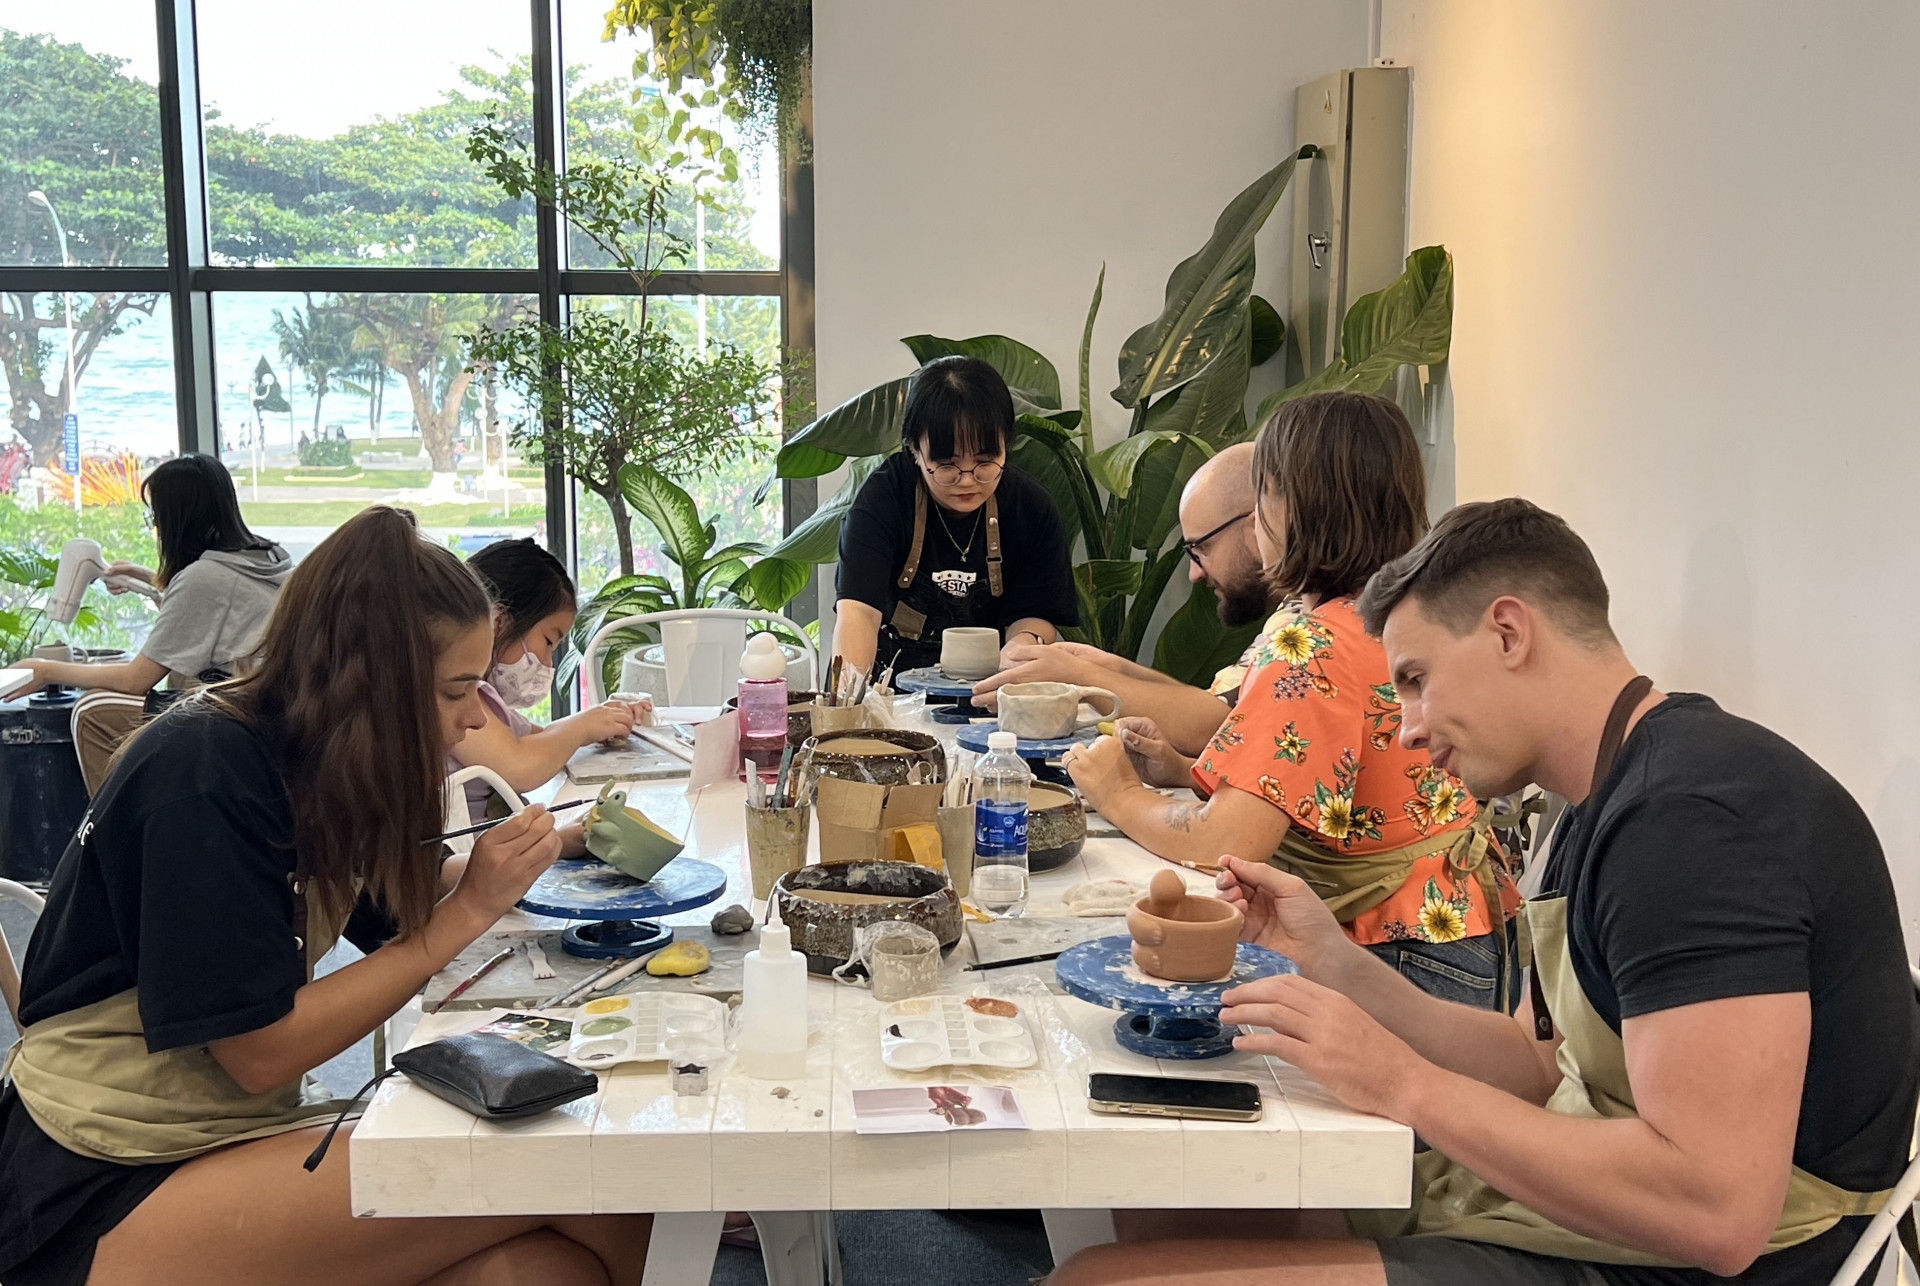 Nhiều du khách say mê tập làm gốm thủ công tại Yên Pottery - Workshop gốm thủ công Nha Trang.